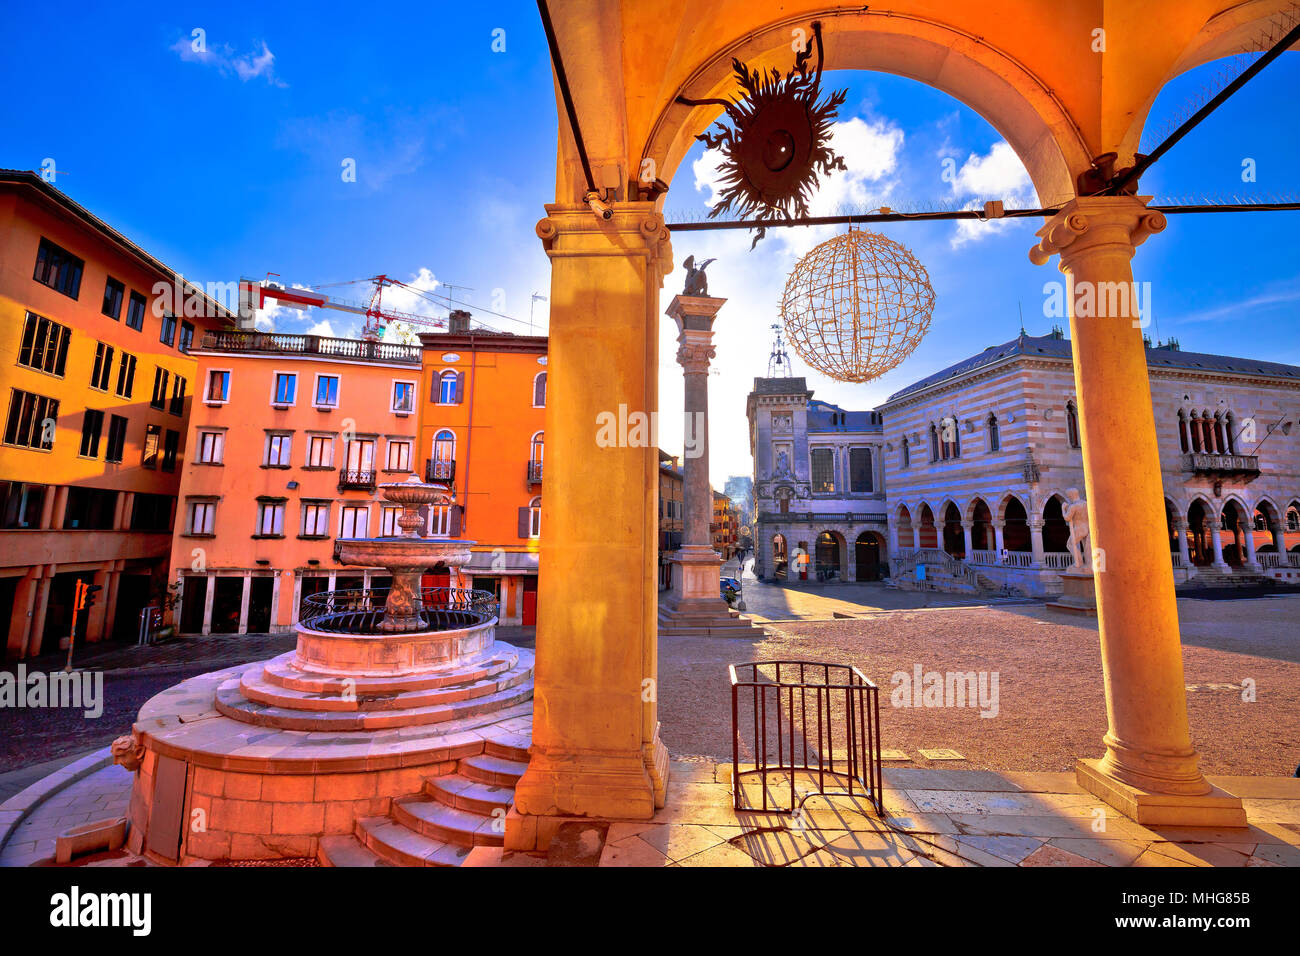 Antica piazza italiana archi e architettura nella città di Udine, regione Friuli Venezia Giulia di Italia Foto Stock